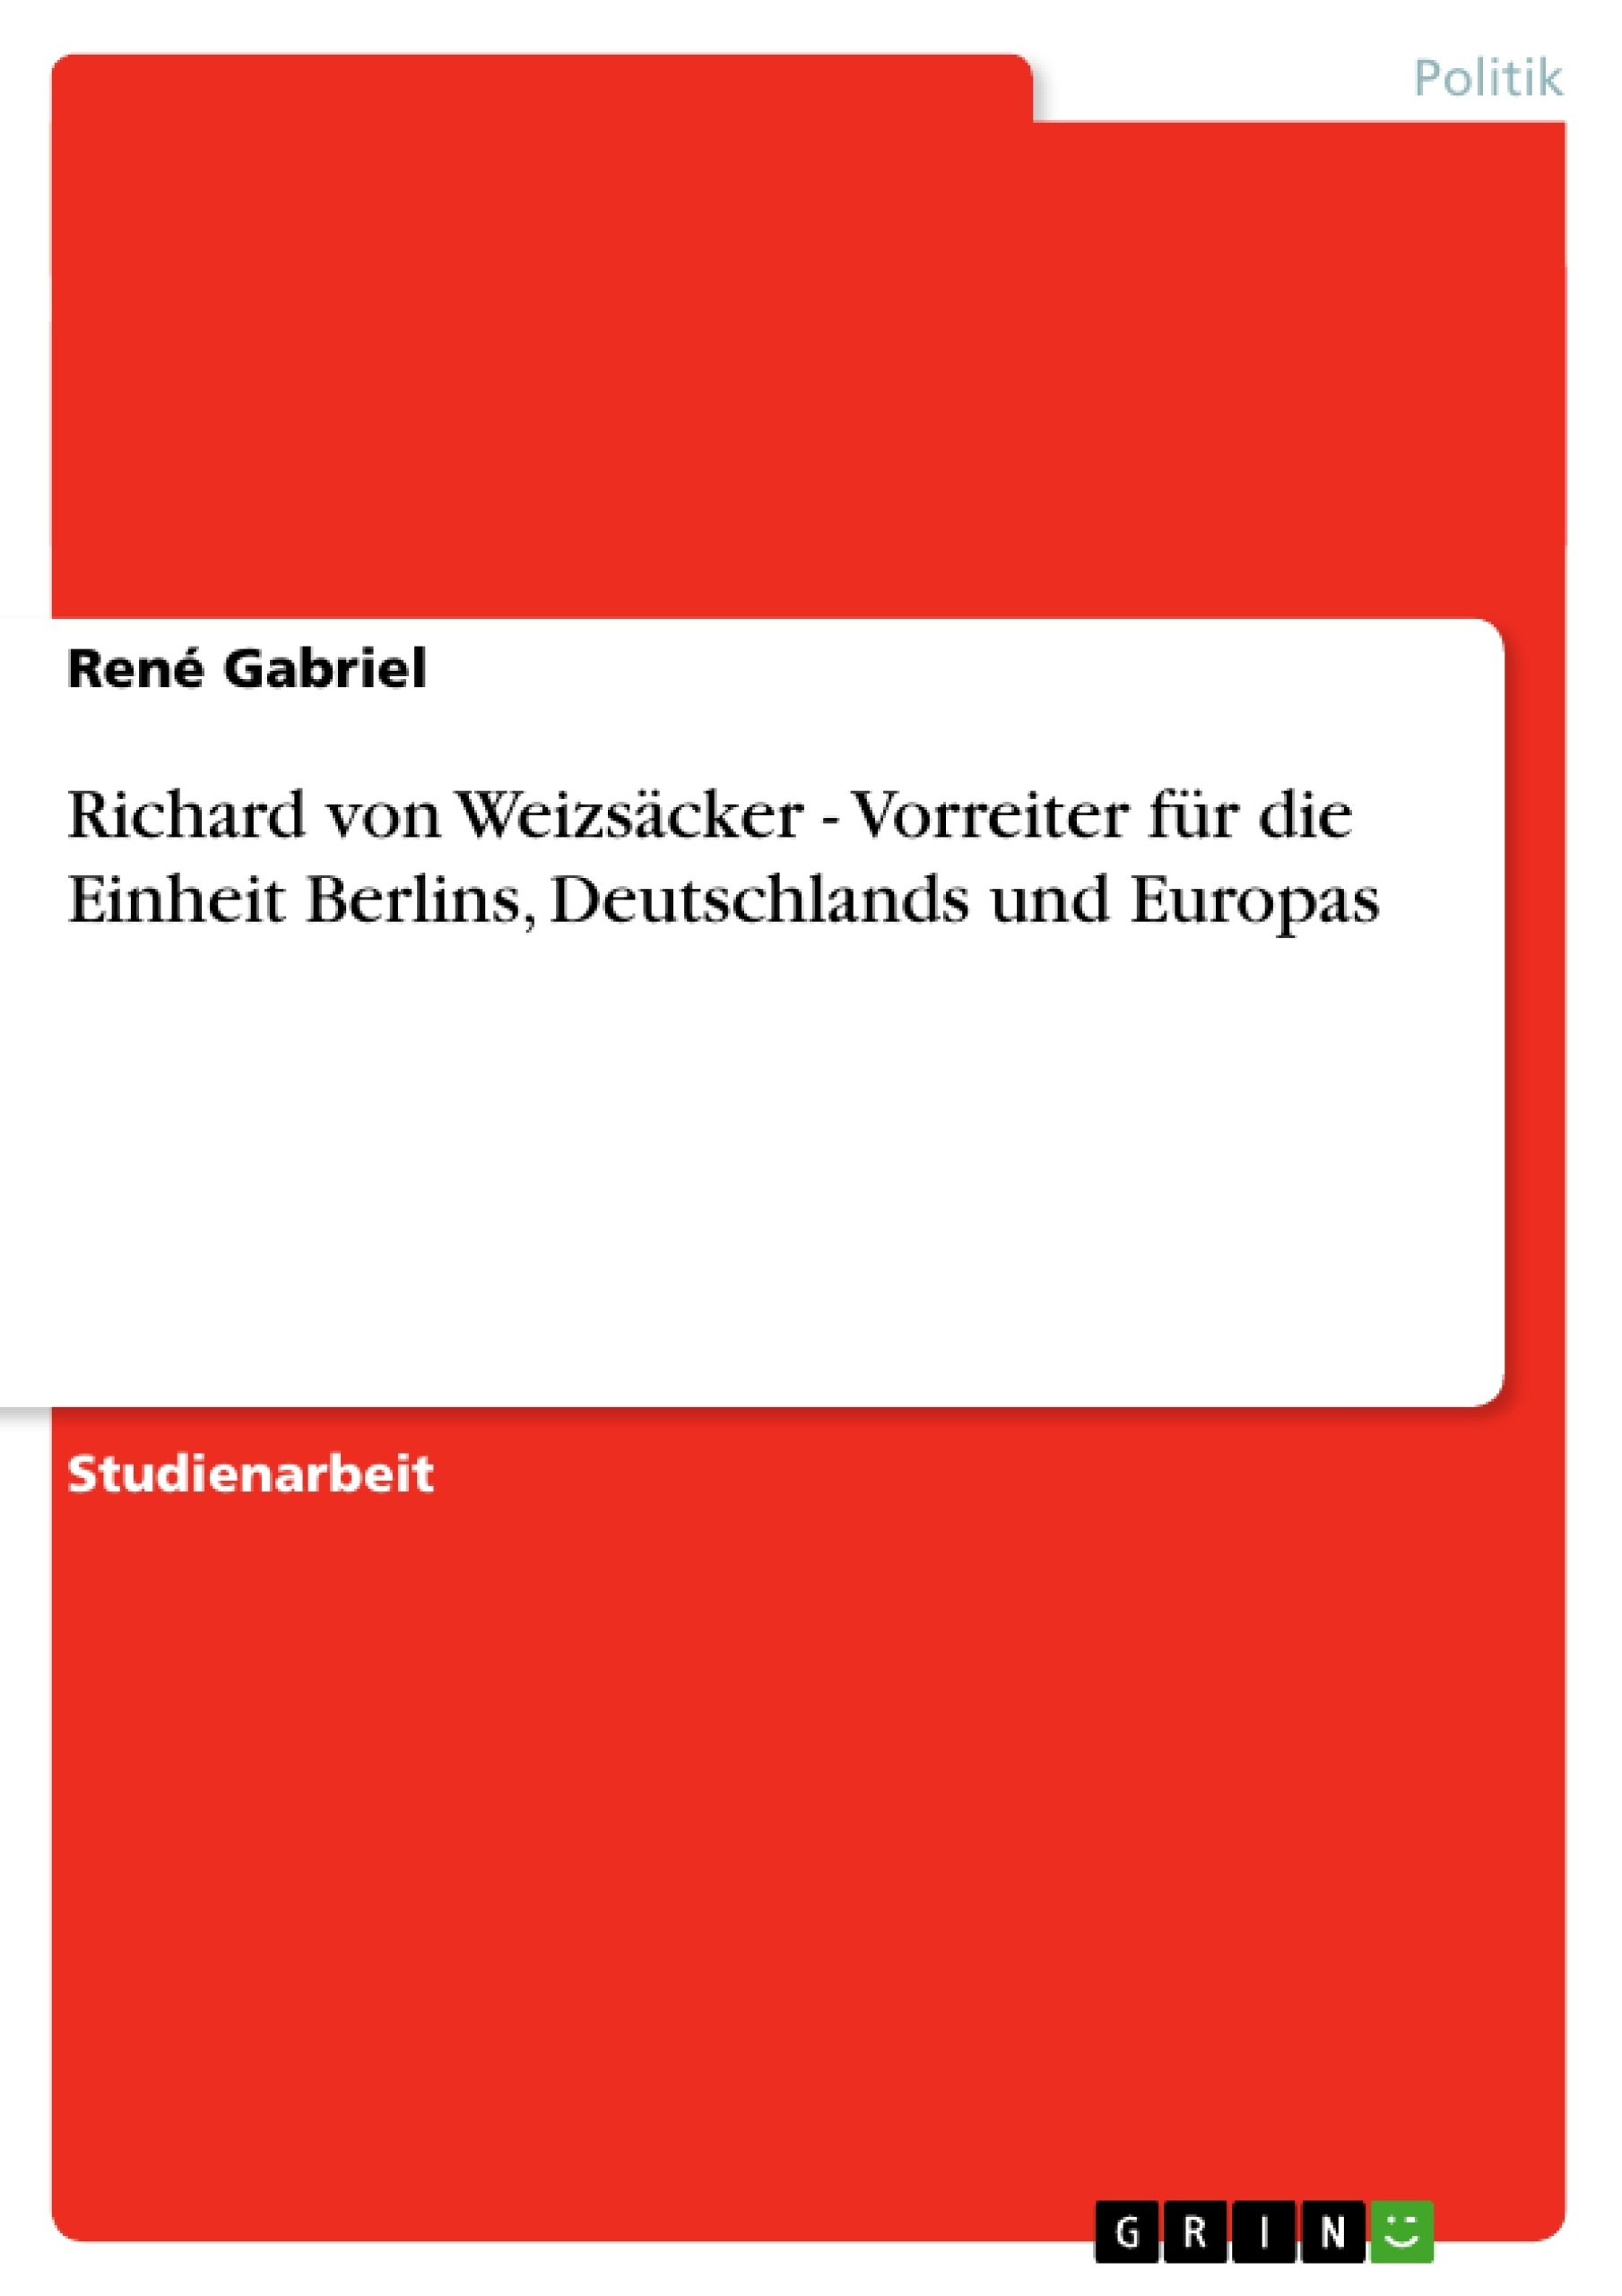 Título: Richard von Weizsäcker - Vorreiter für die Einheit Berlins, Deutschlands und Europas